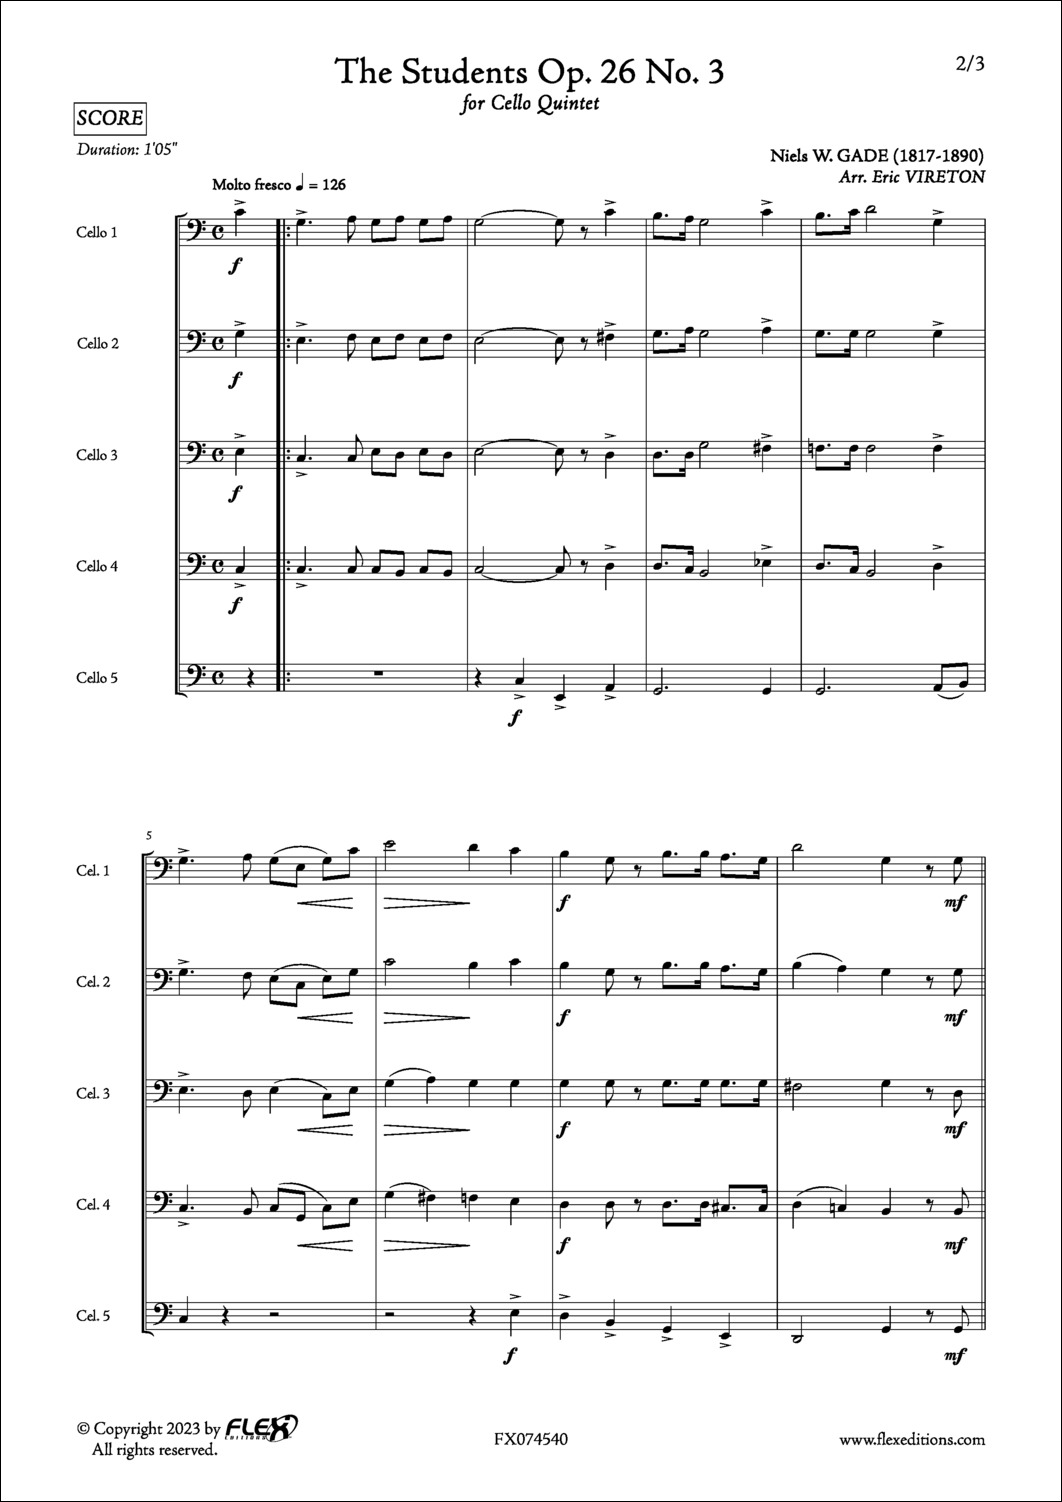 The Students Op. 26 No. 3 - N. GADE - <font color=#666666>Cello Quintet</font>